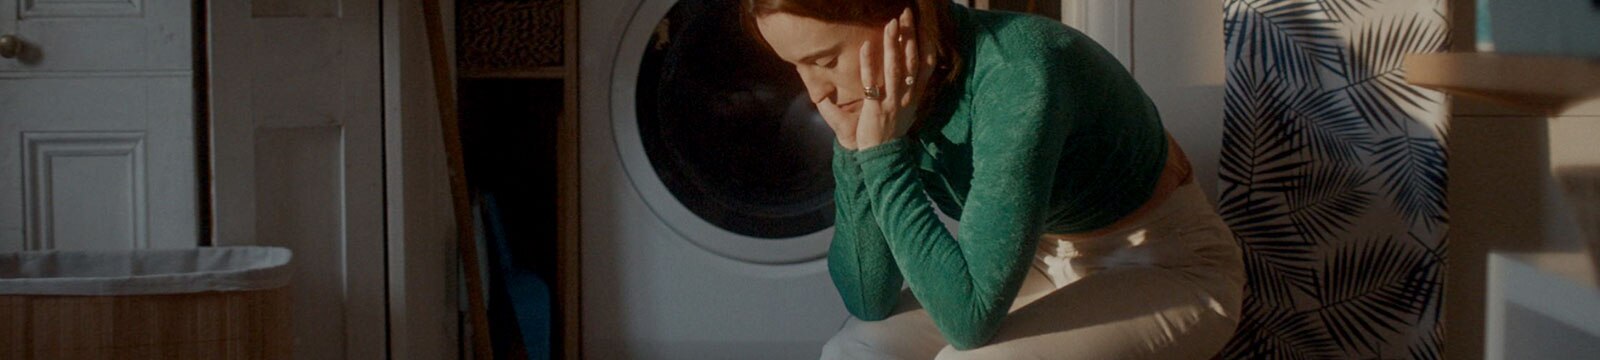 Una mujer agotada sentada sola en una lavandería